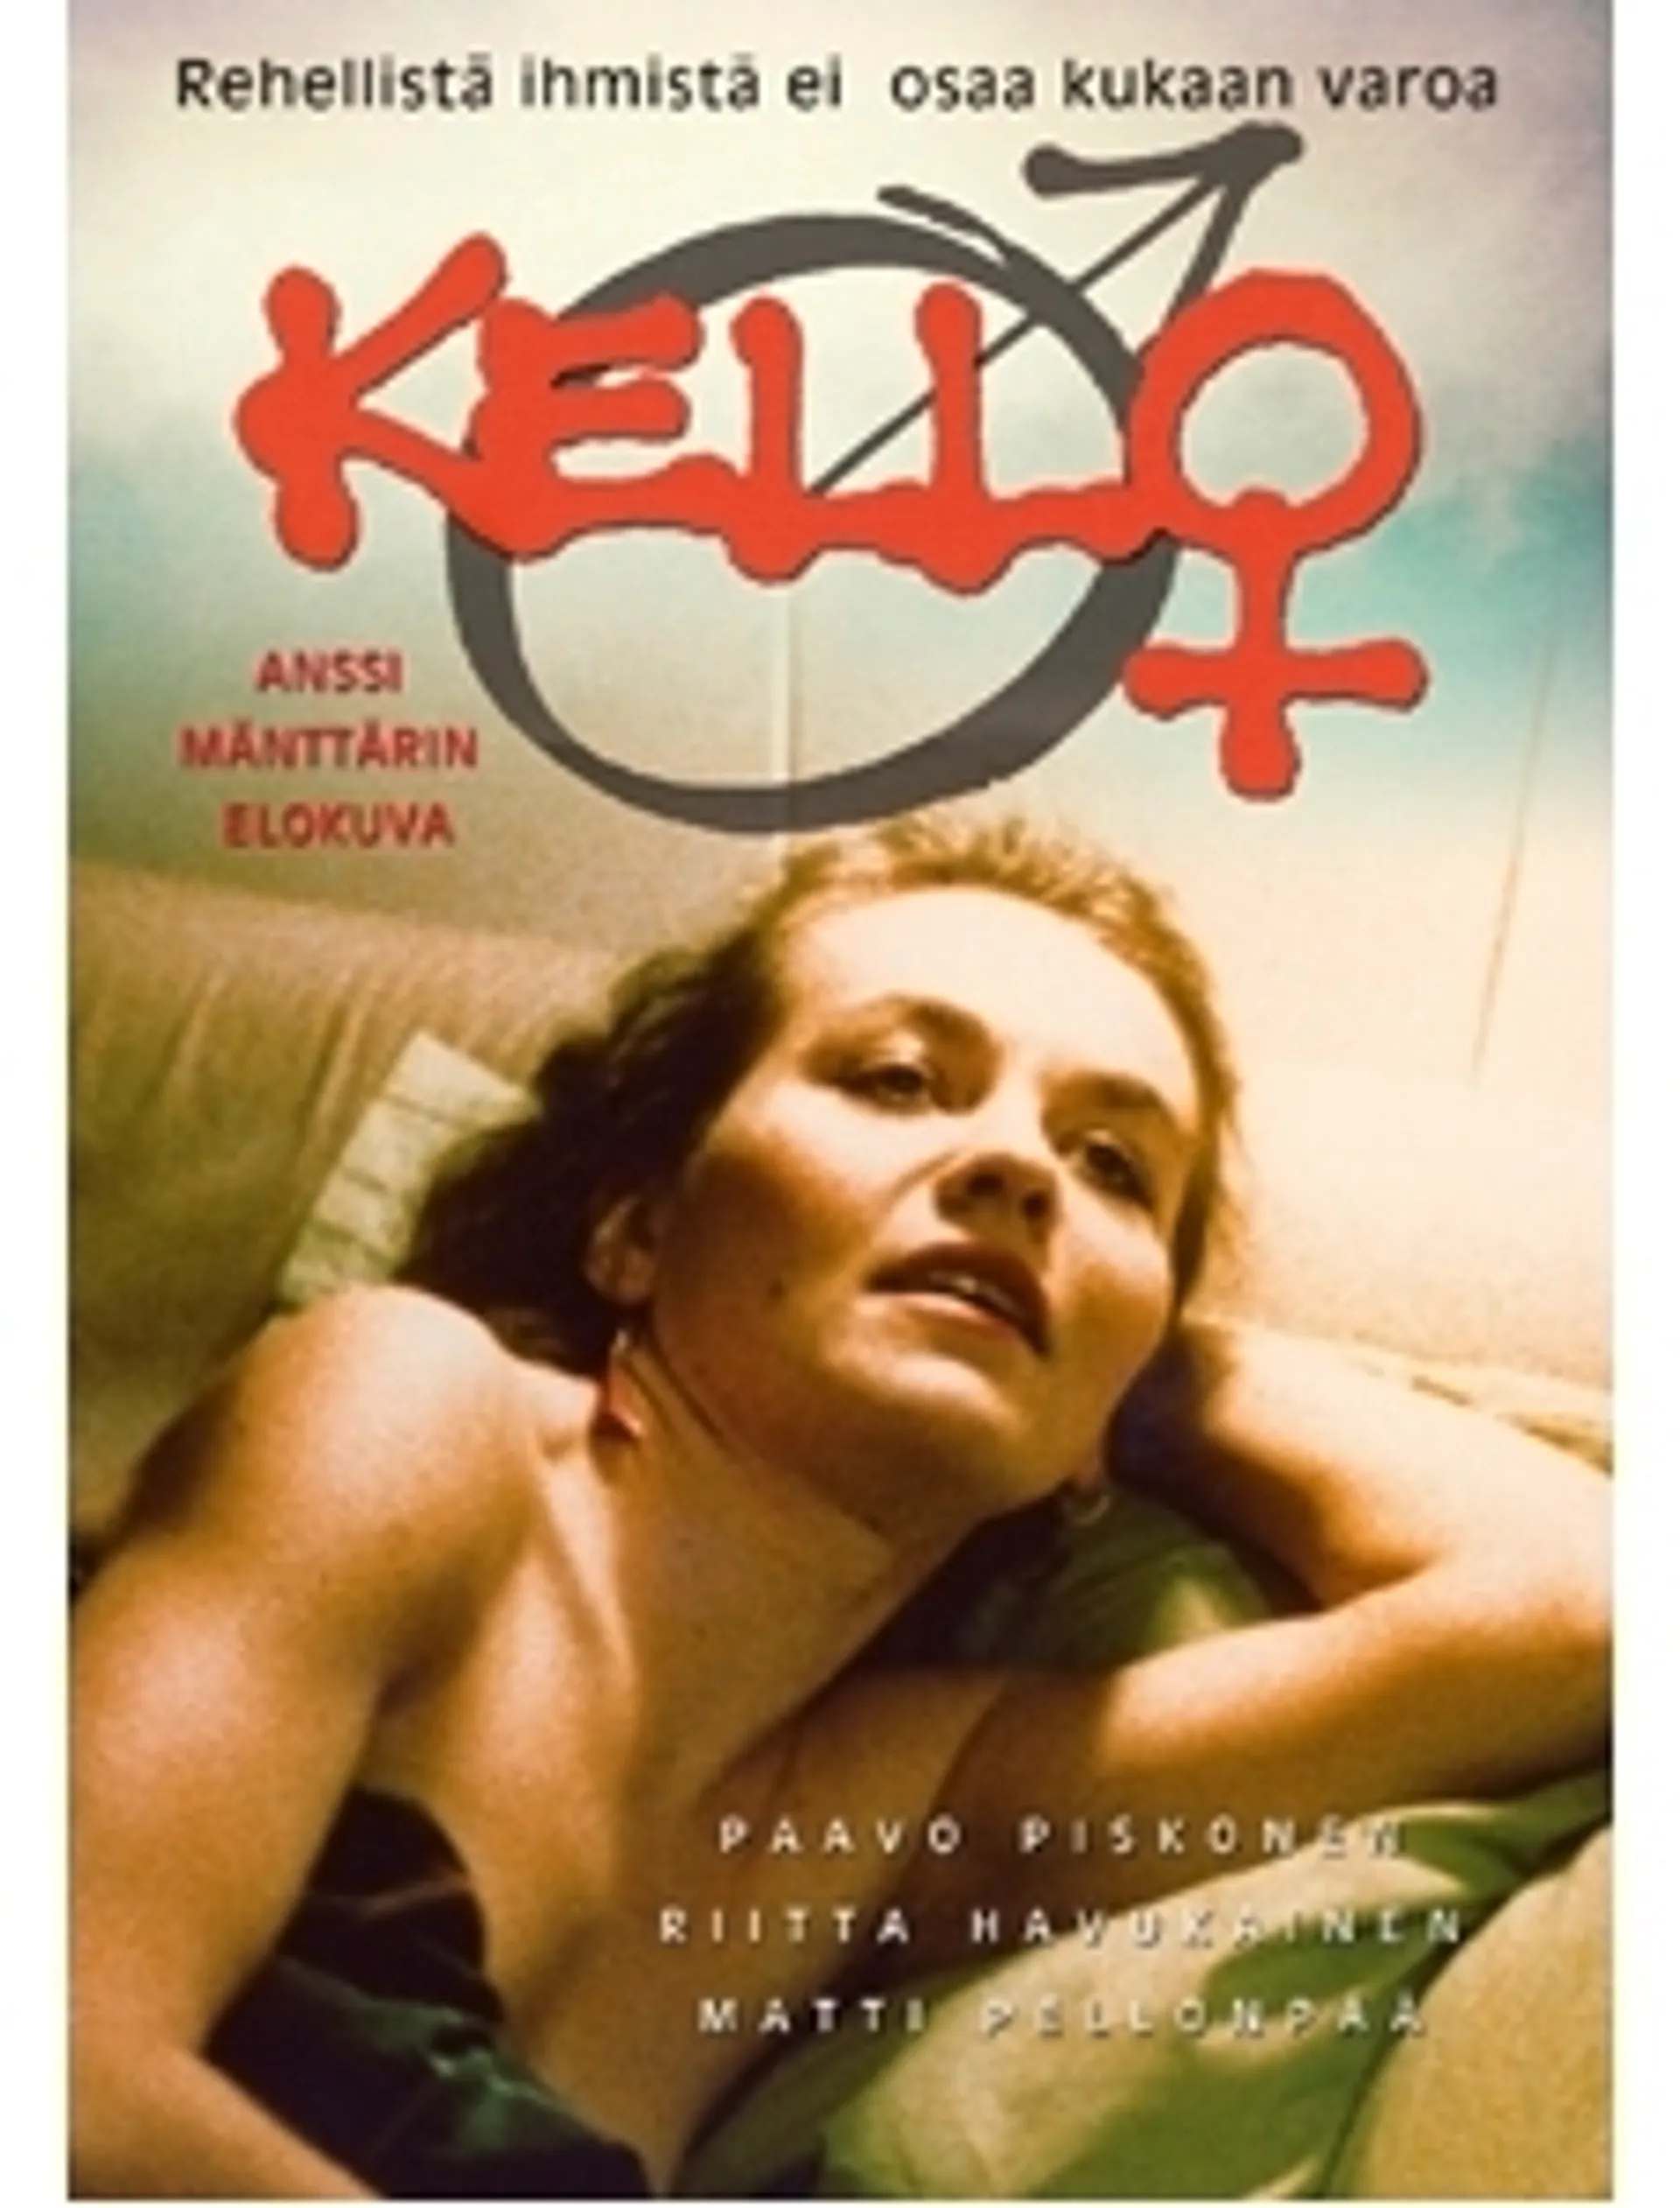 DVD Kello